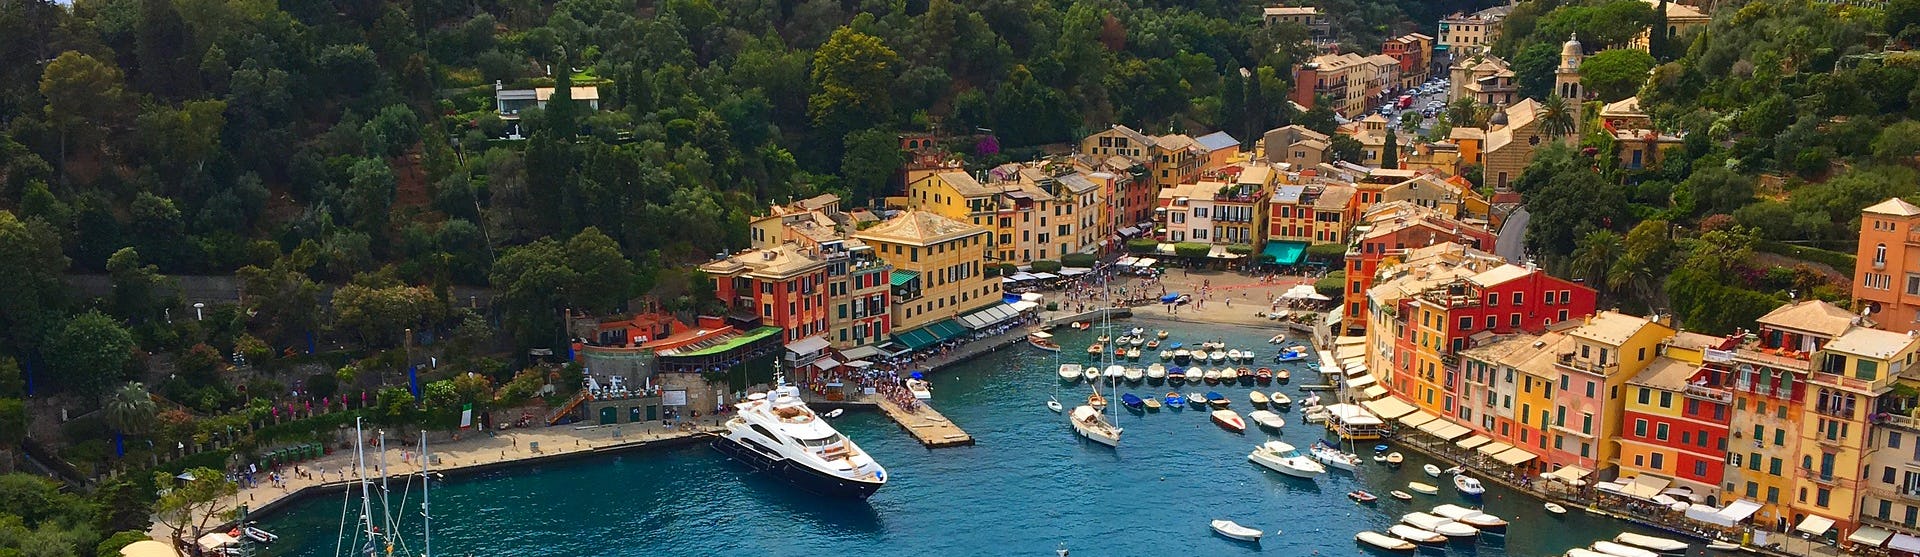 Portofinos hamn med båtar, gröna träd och färgglada hus.